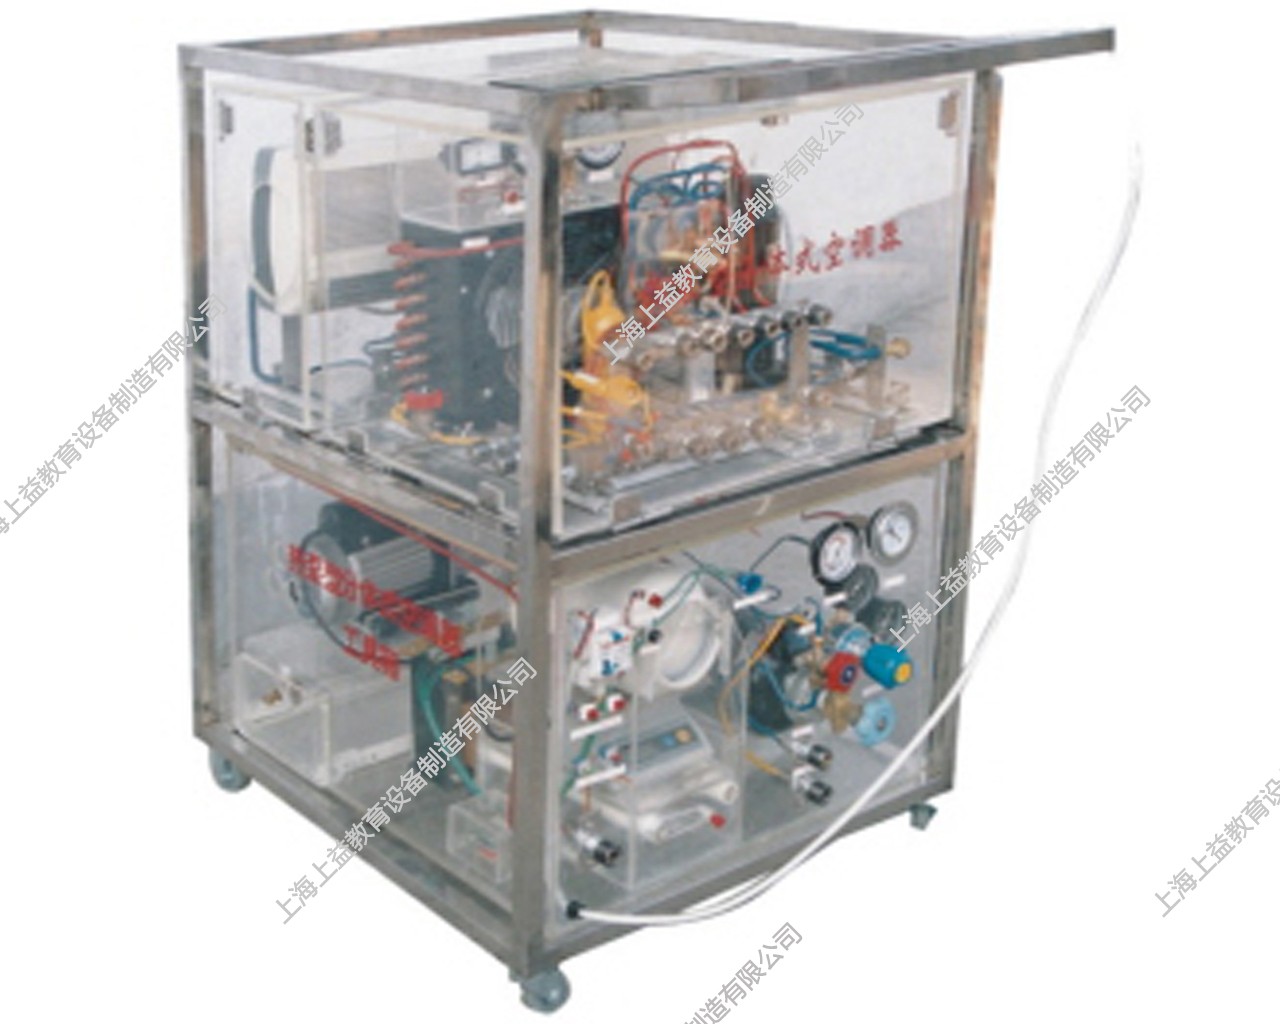 SY-549-熱泵型分體式空調系統實驗裝置